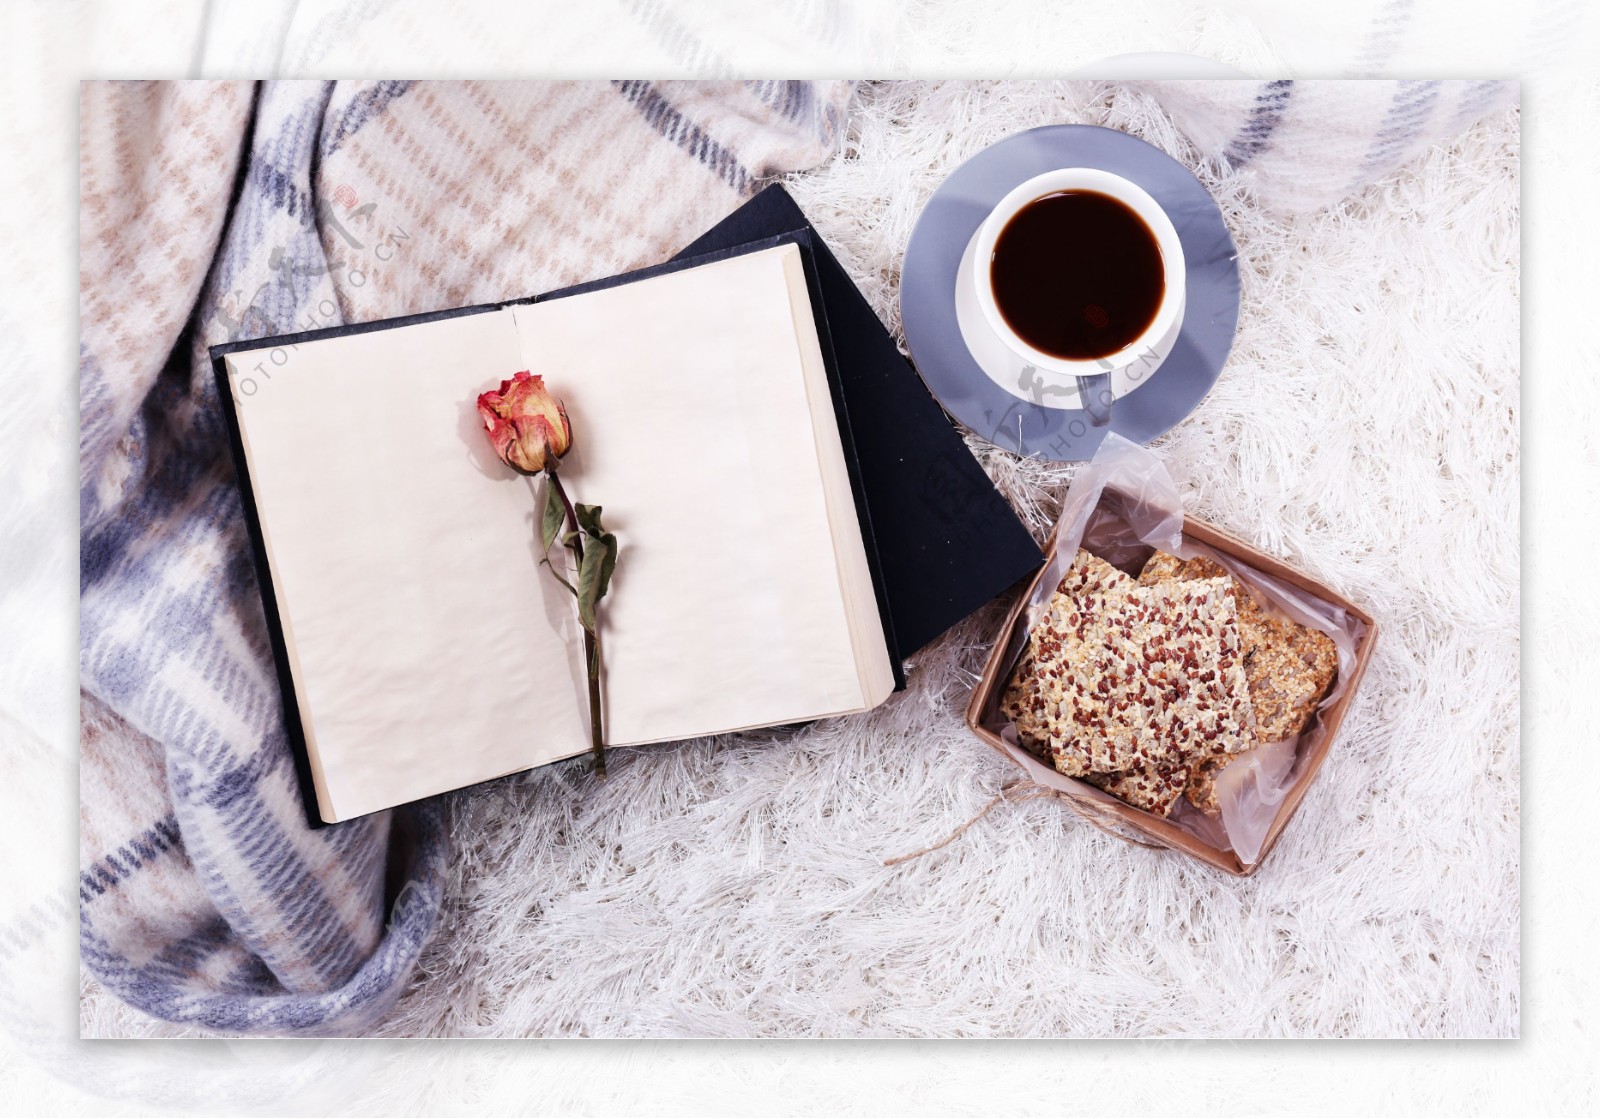 茶点饼干咖啡杯和书本中的花朵图片